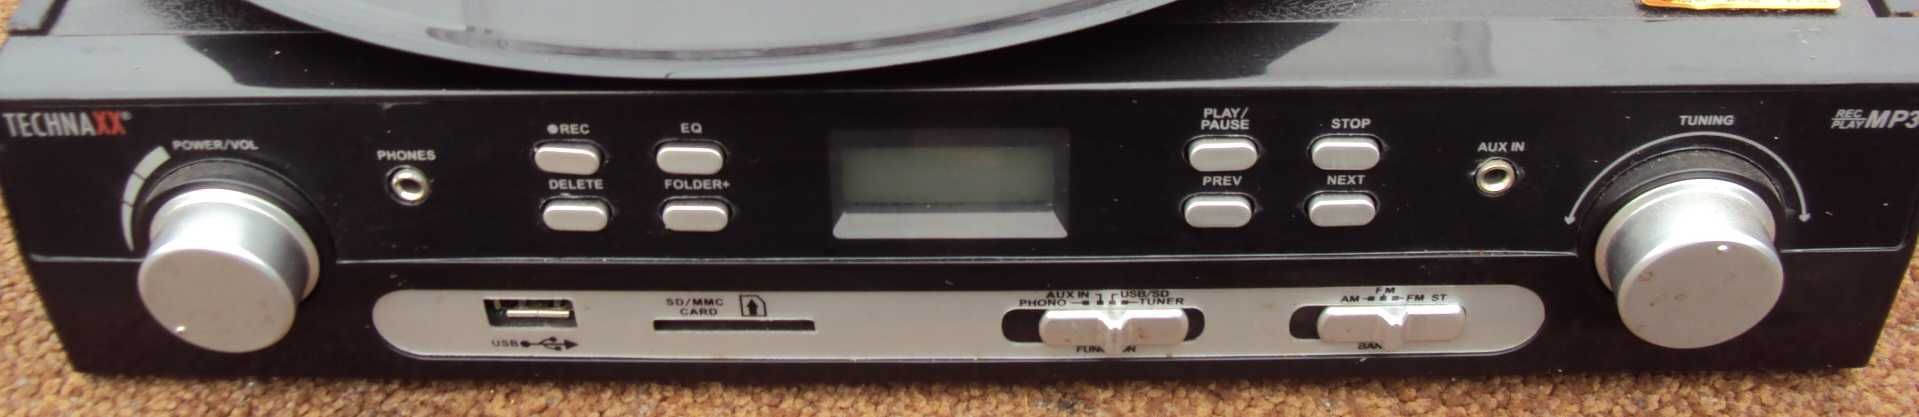 Виниловый проигрыватель TECHNAXX + USB SD + TAPE кассета + радио FM